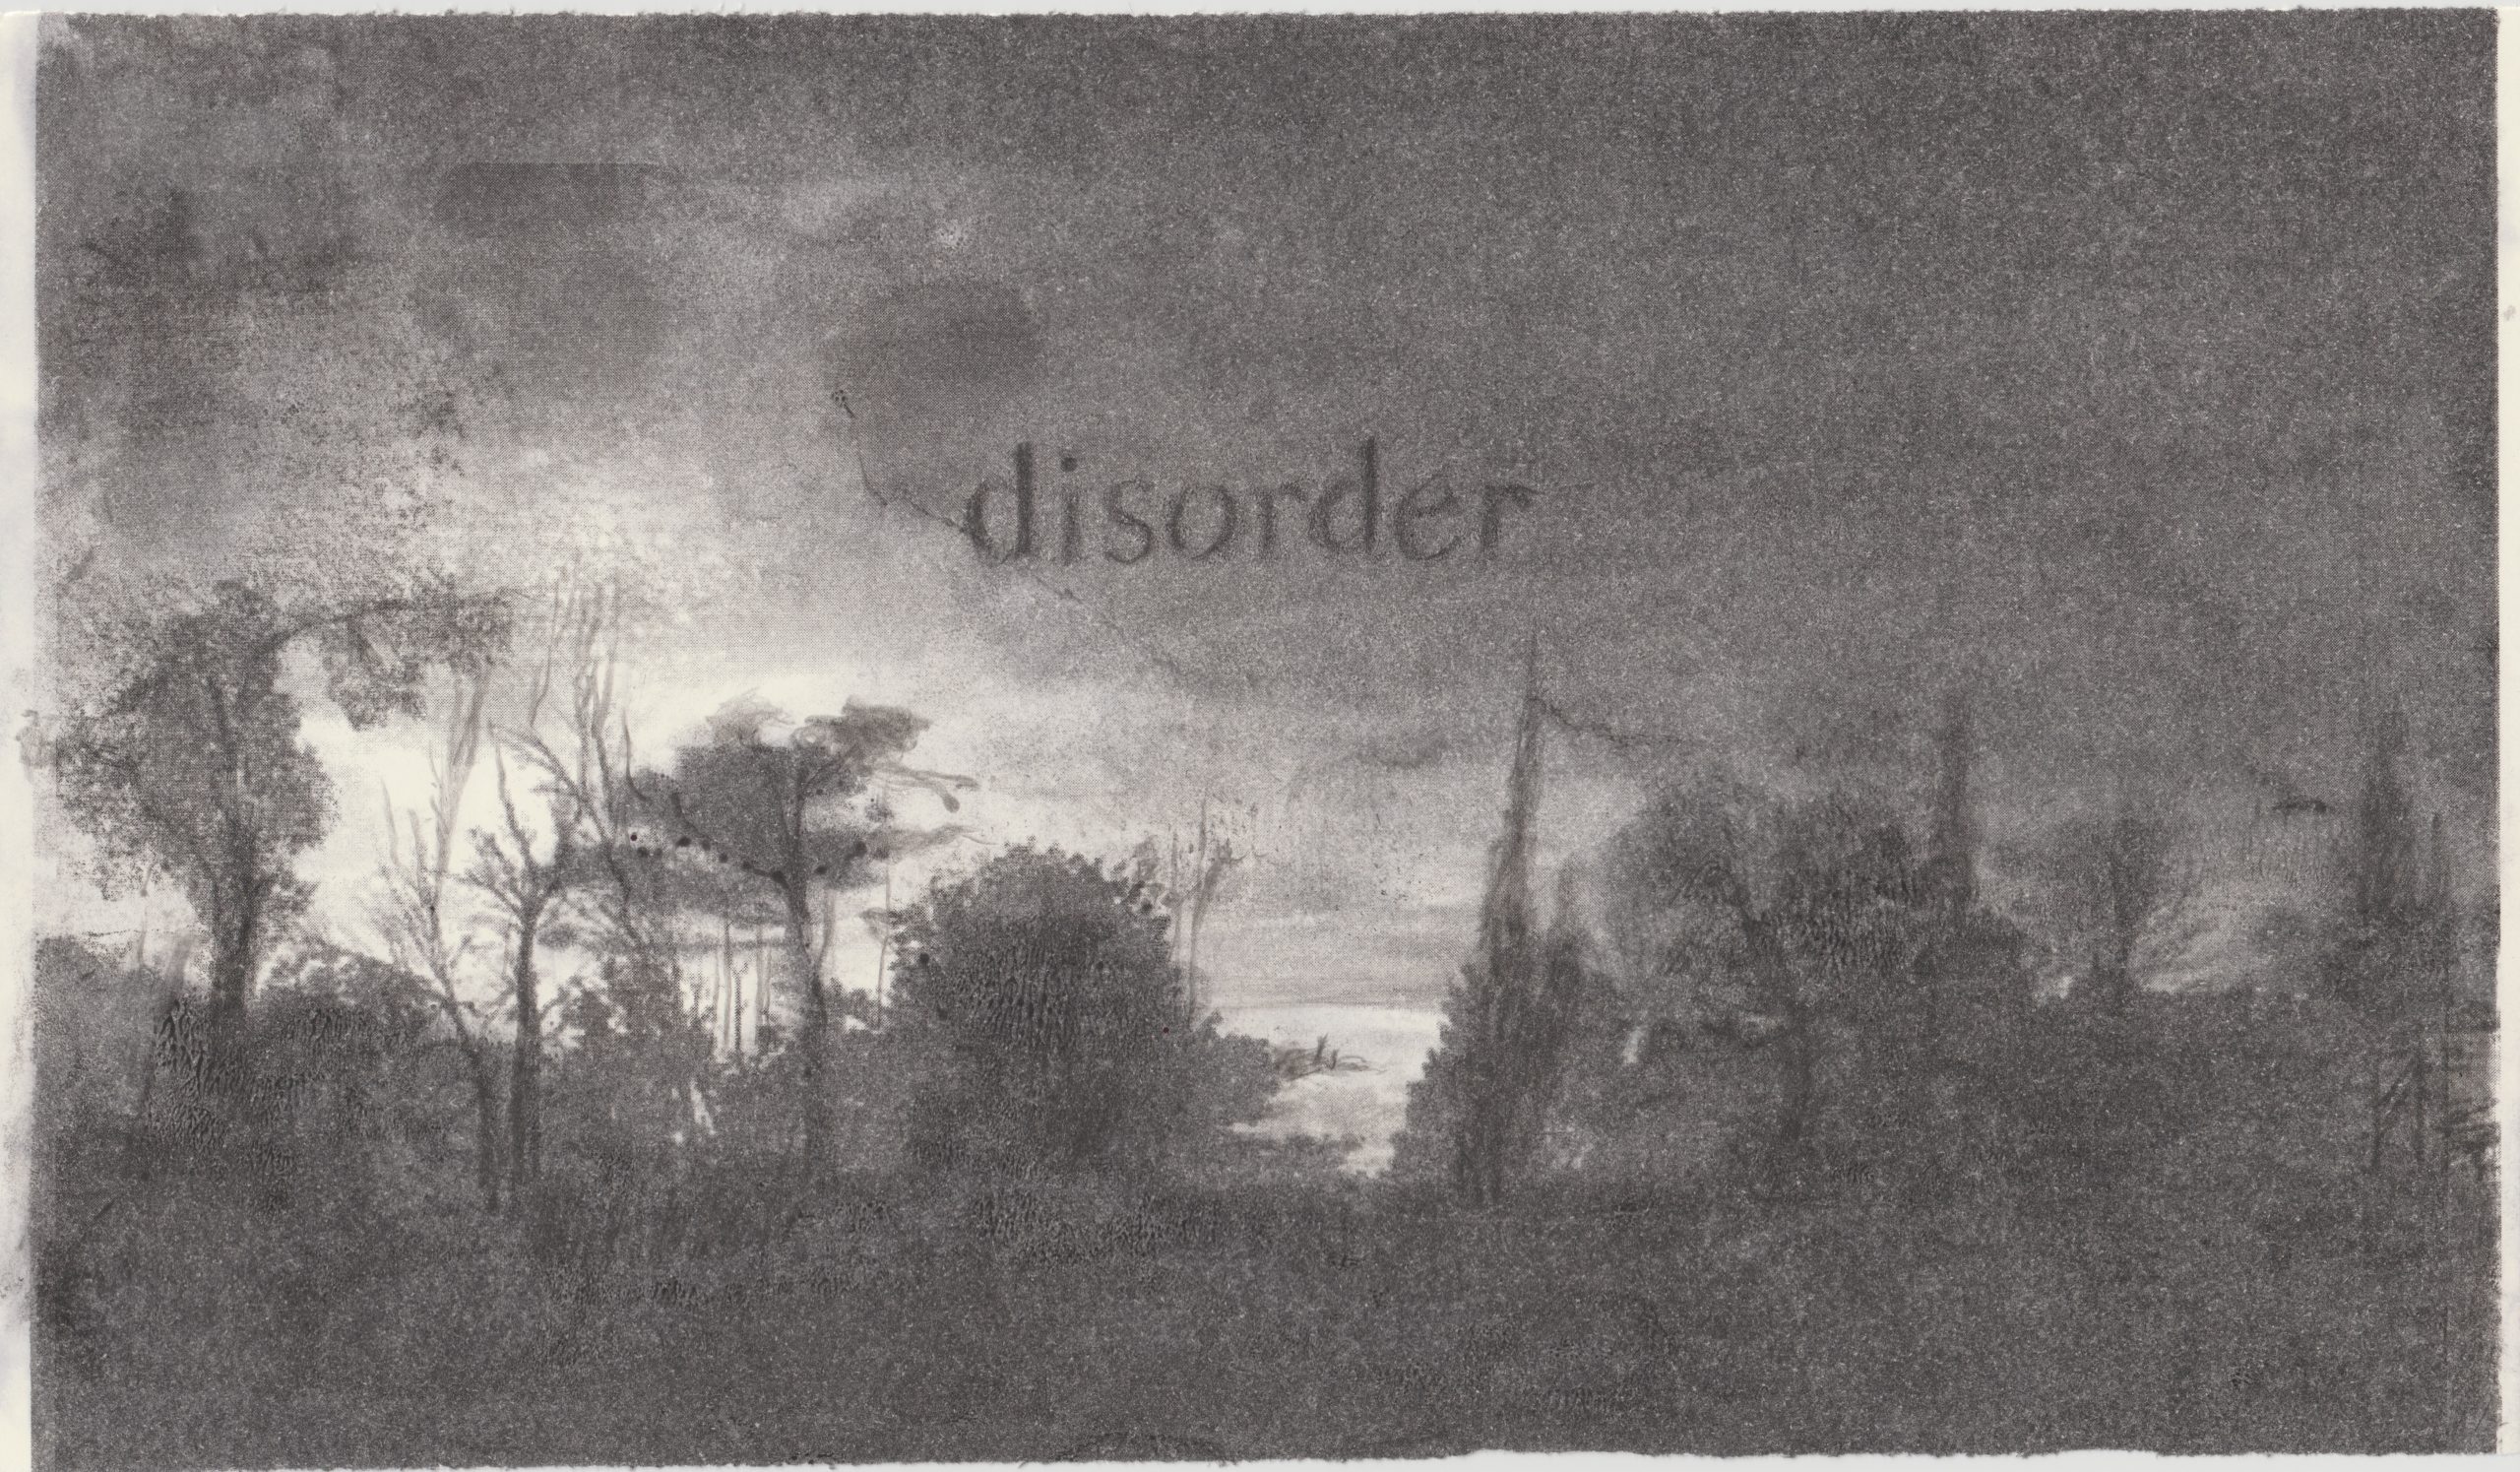 Disorder, 2022